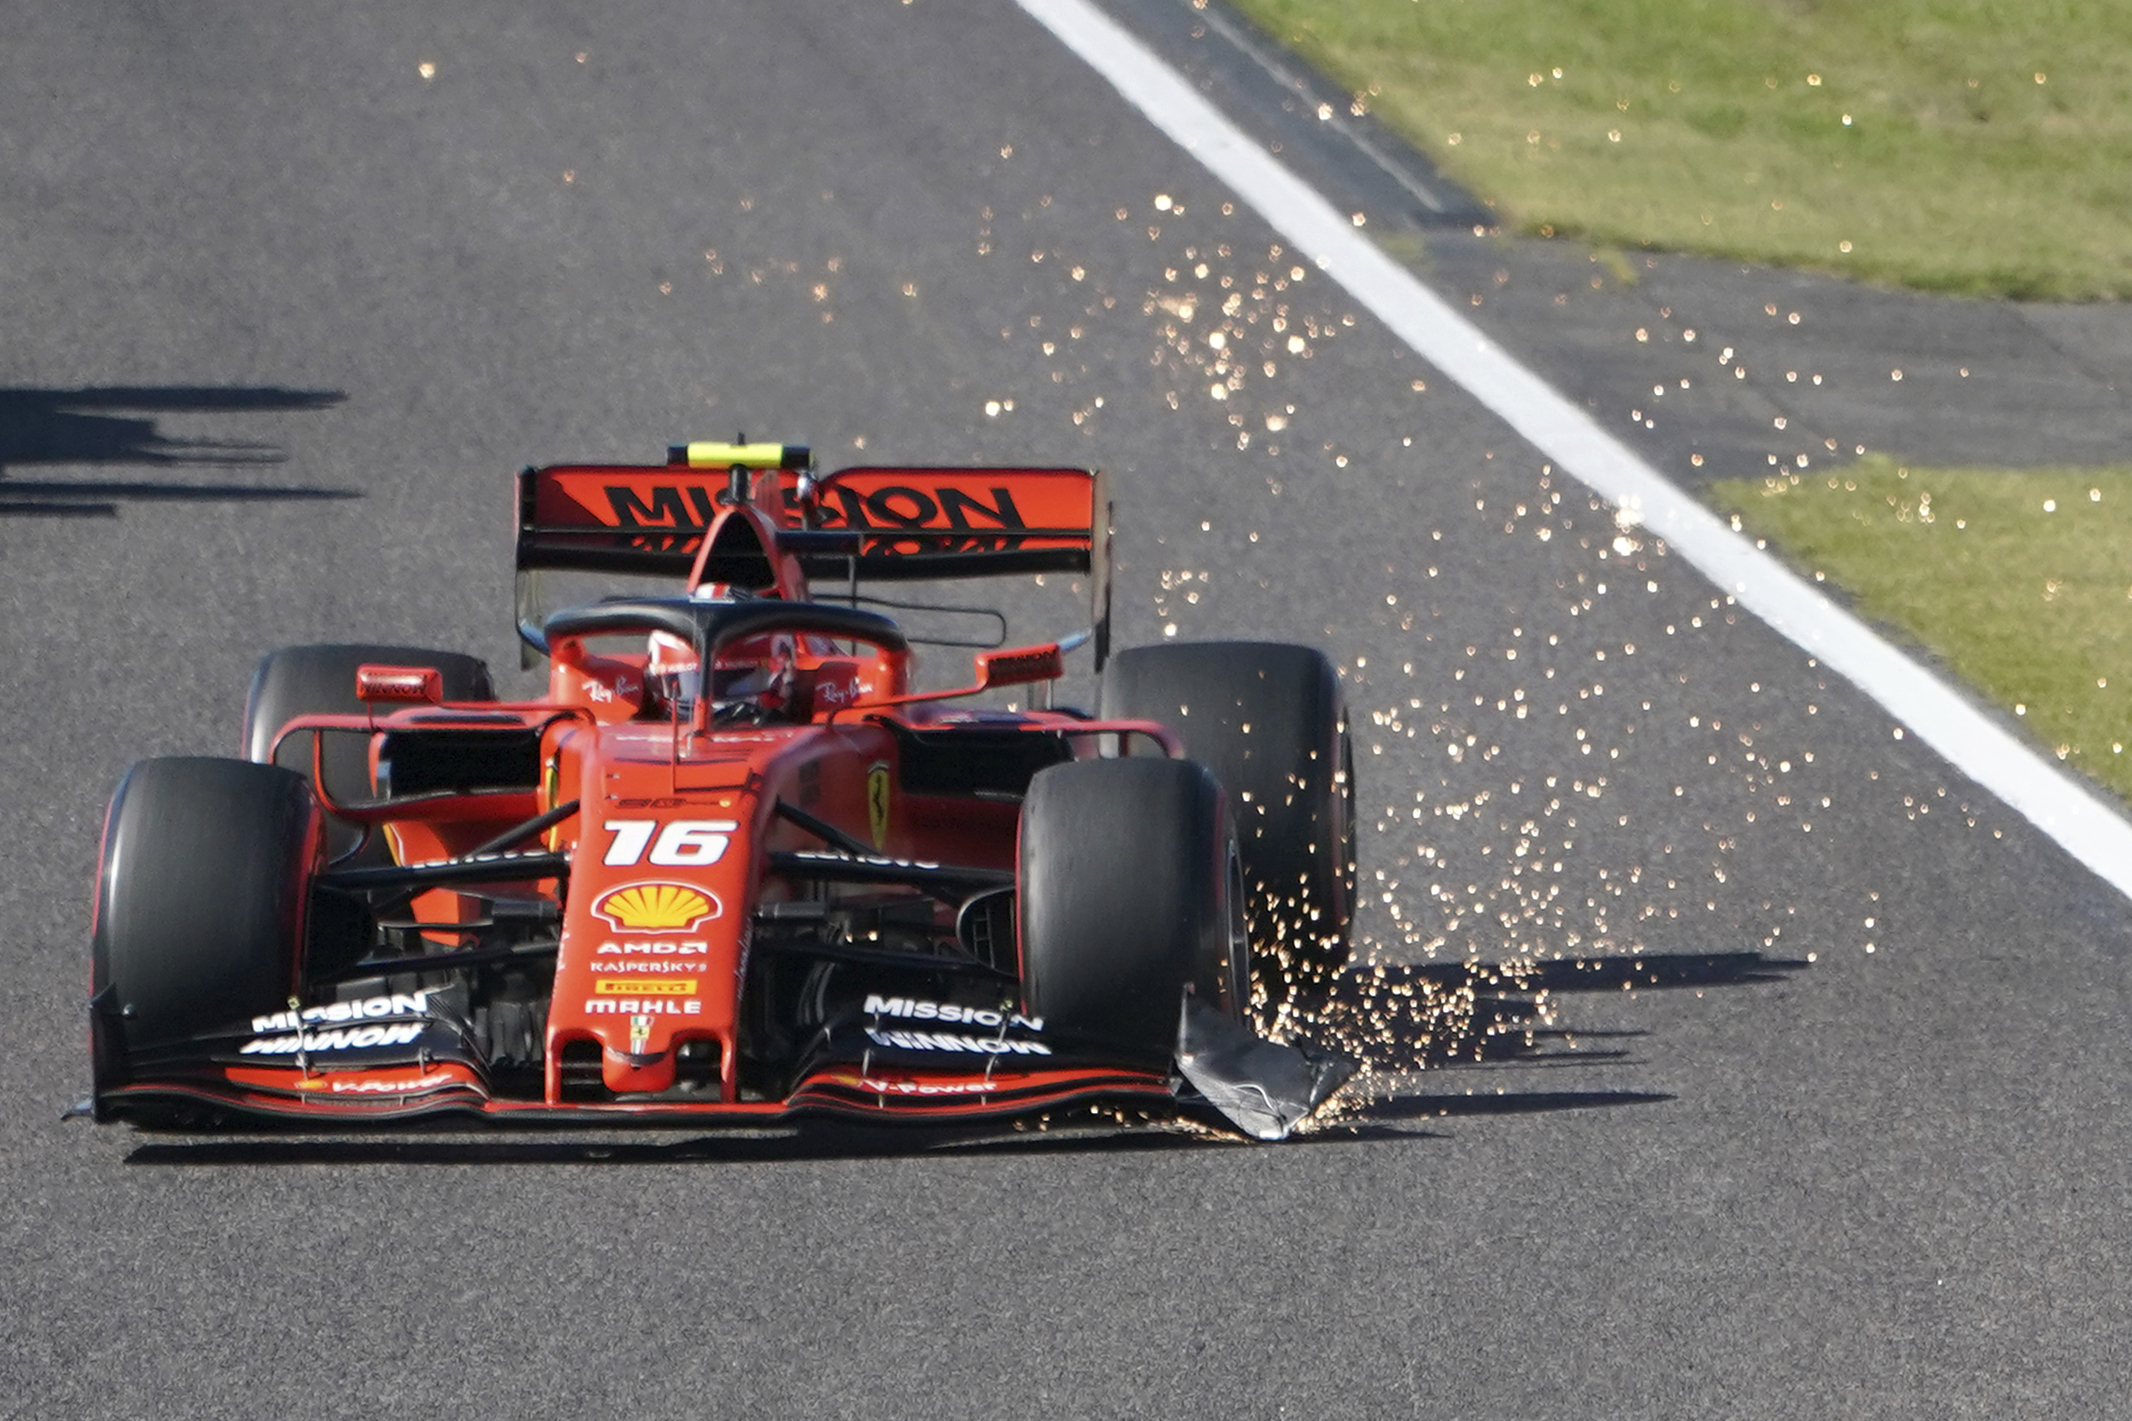 Monacký jazdec F1  na Ferrari Charles Leclerc počas pretekov Veľkej ceny Japonska na okruhu Suzuka